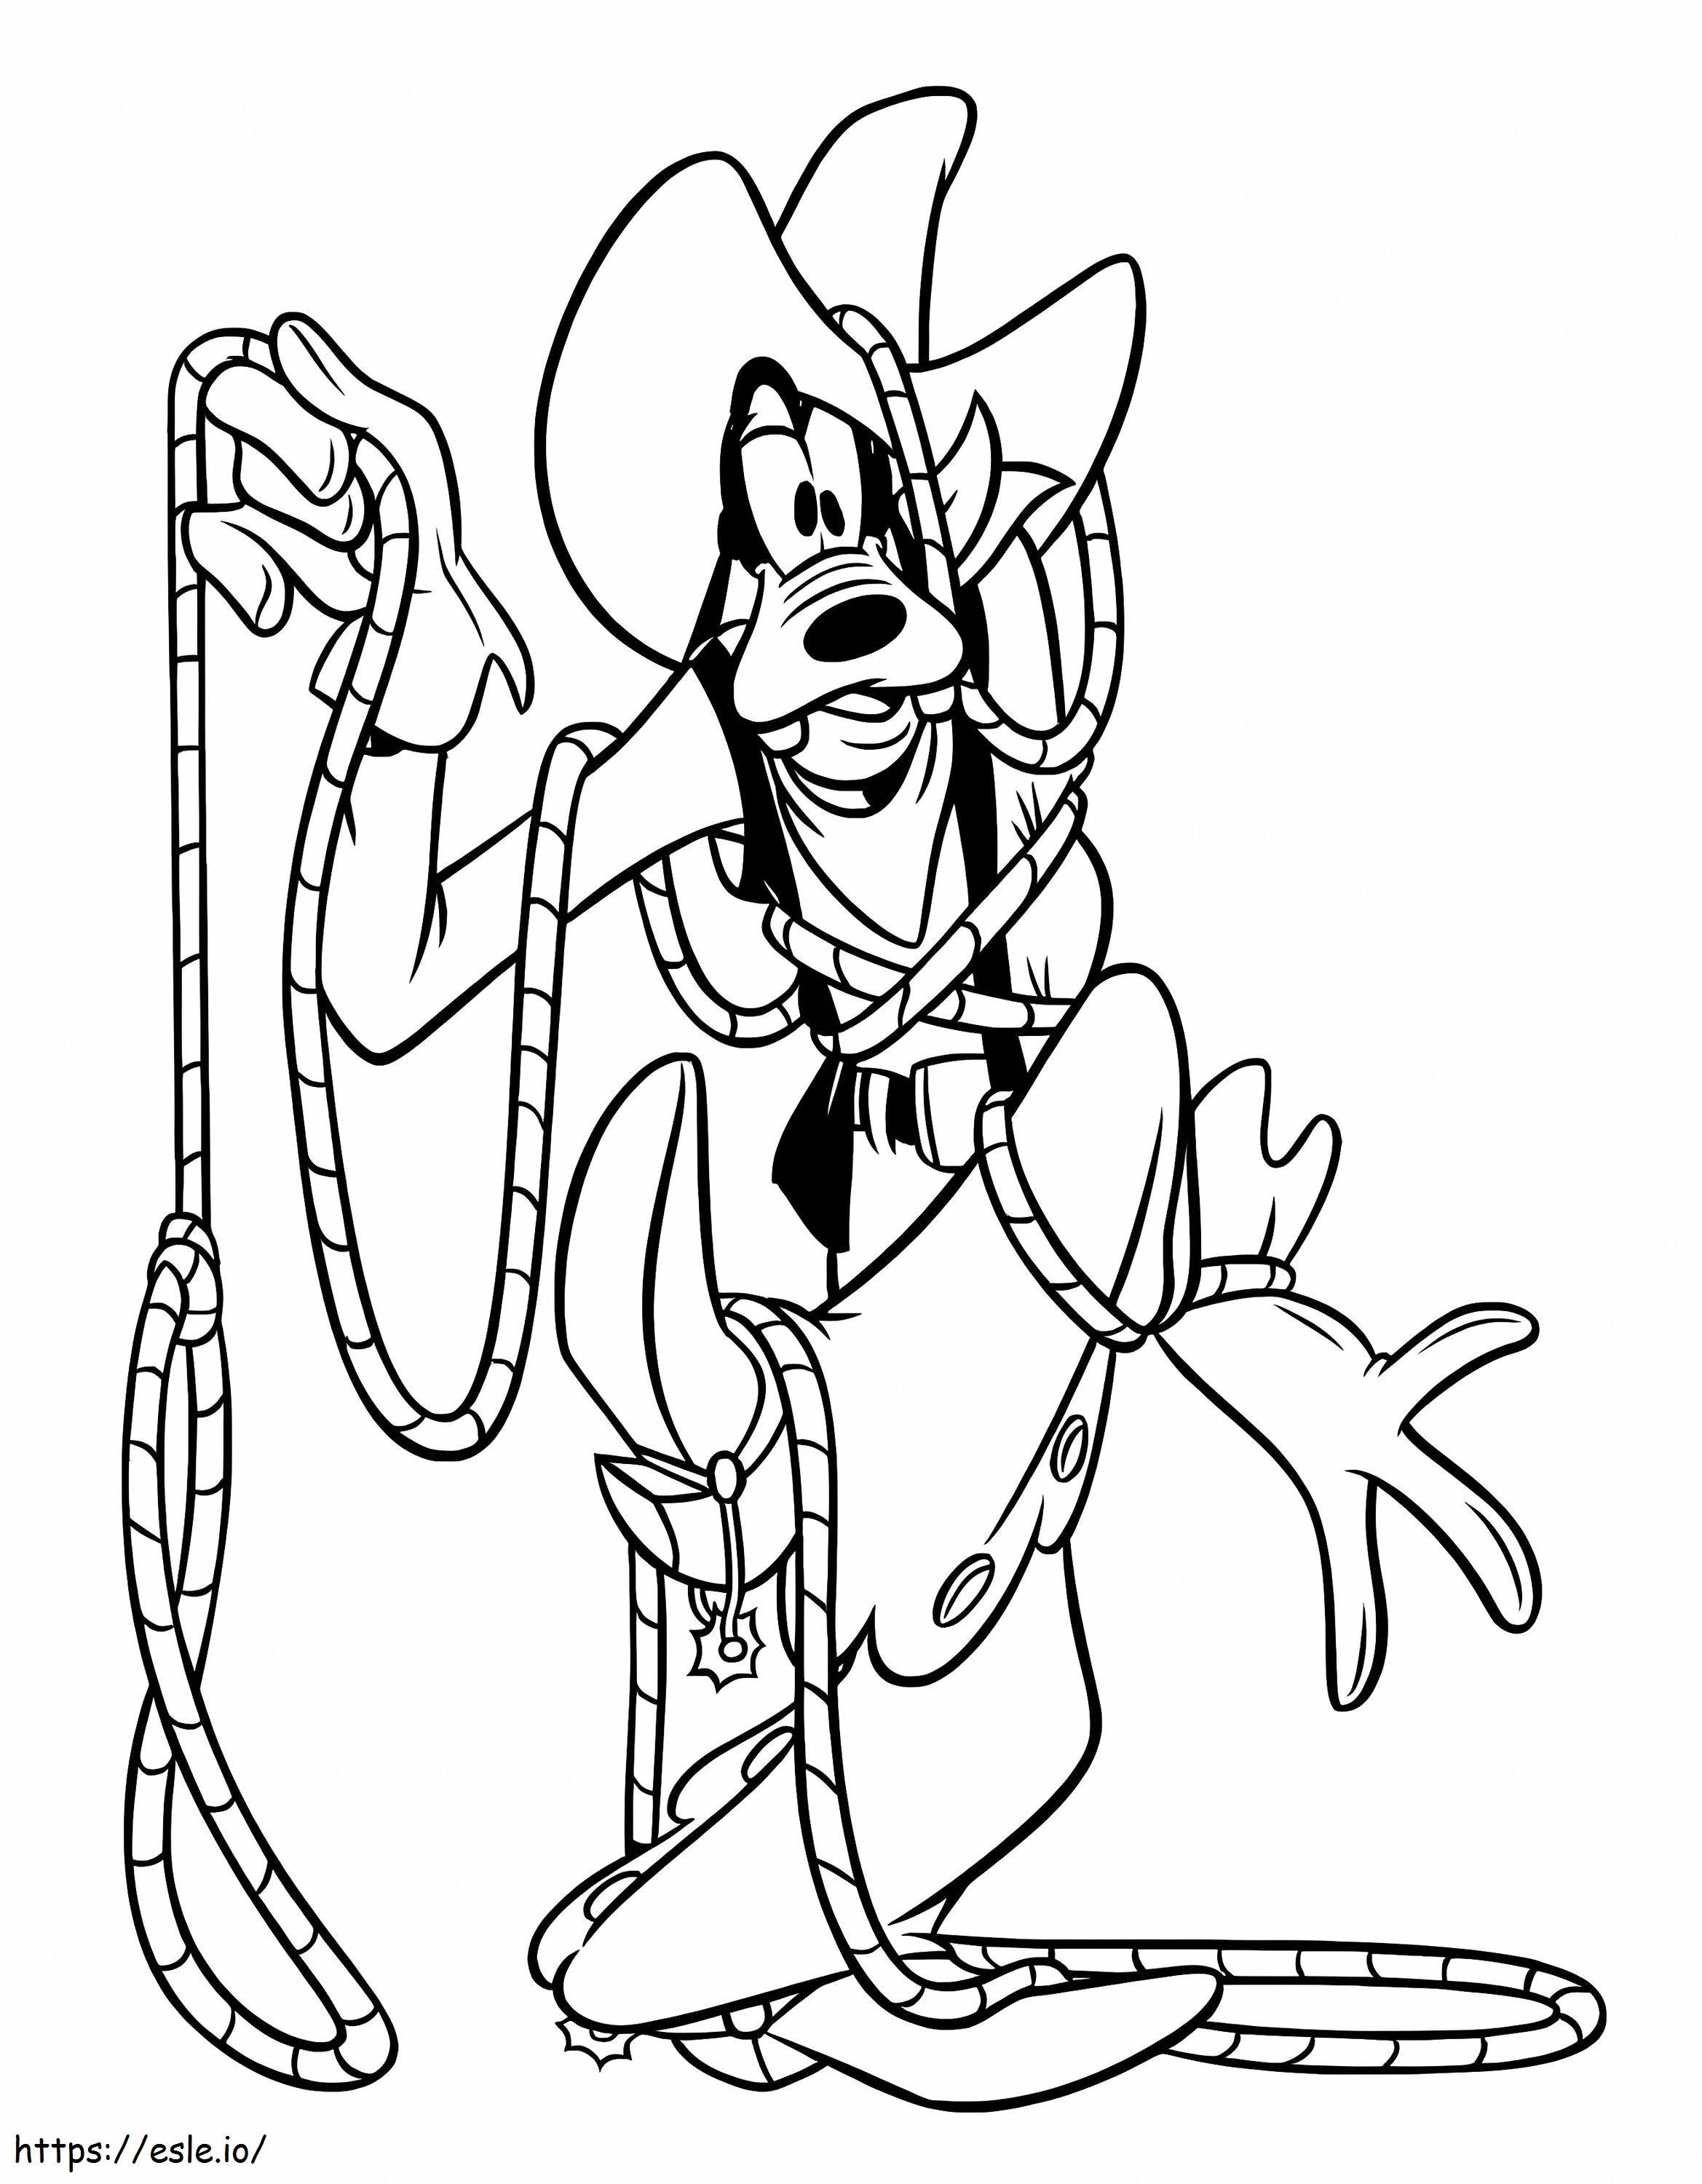 Goofy Cowboy coloring page